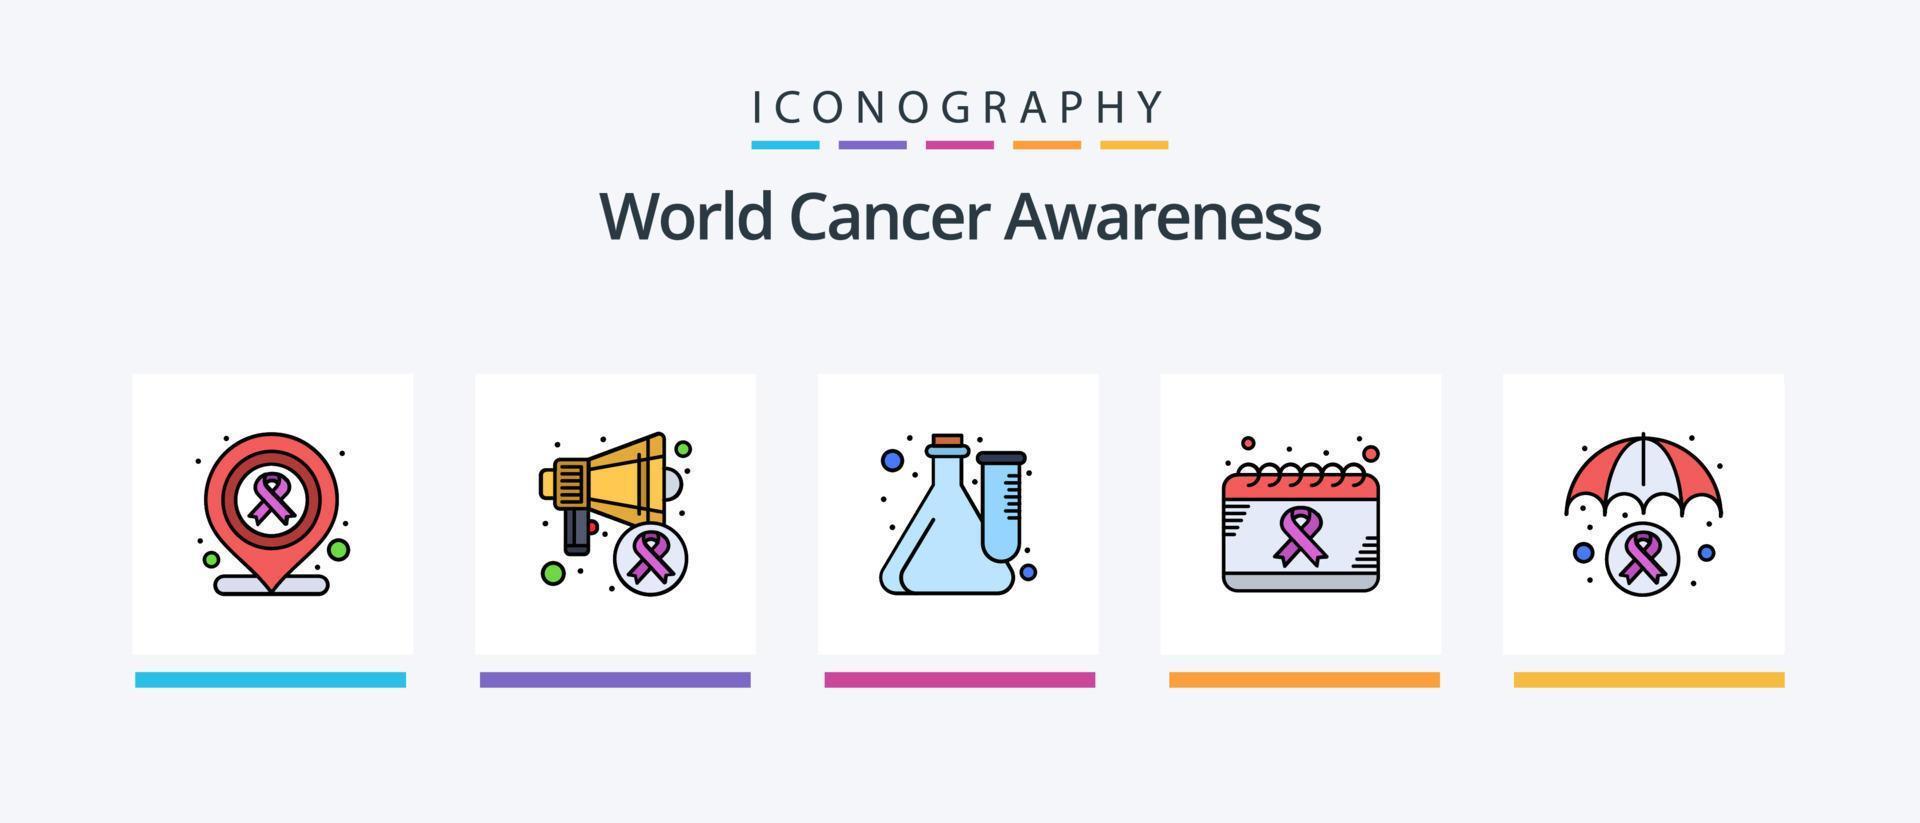 la línea mundial de concientización sobre el cáncer llenó un paquete de 5 íconos que incluye hueso. inyección. derrotar. salud. cáncer. diseño de iconos creativos vector